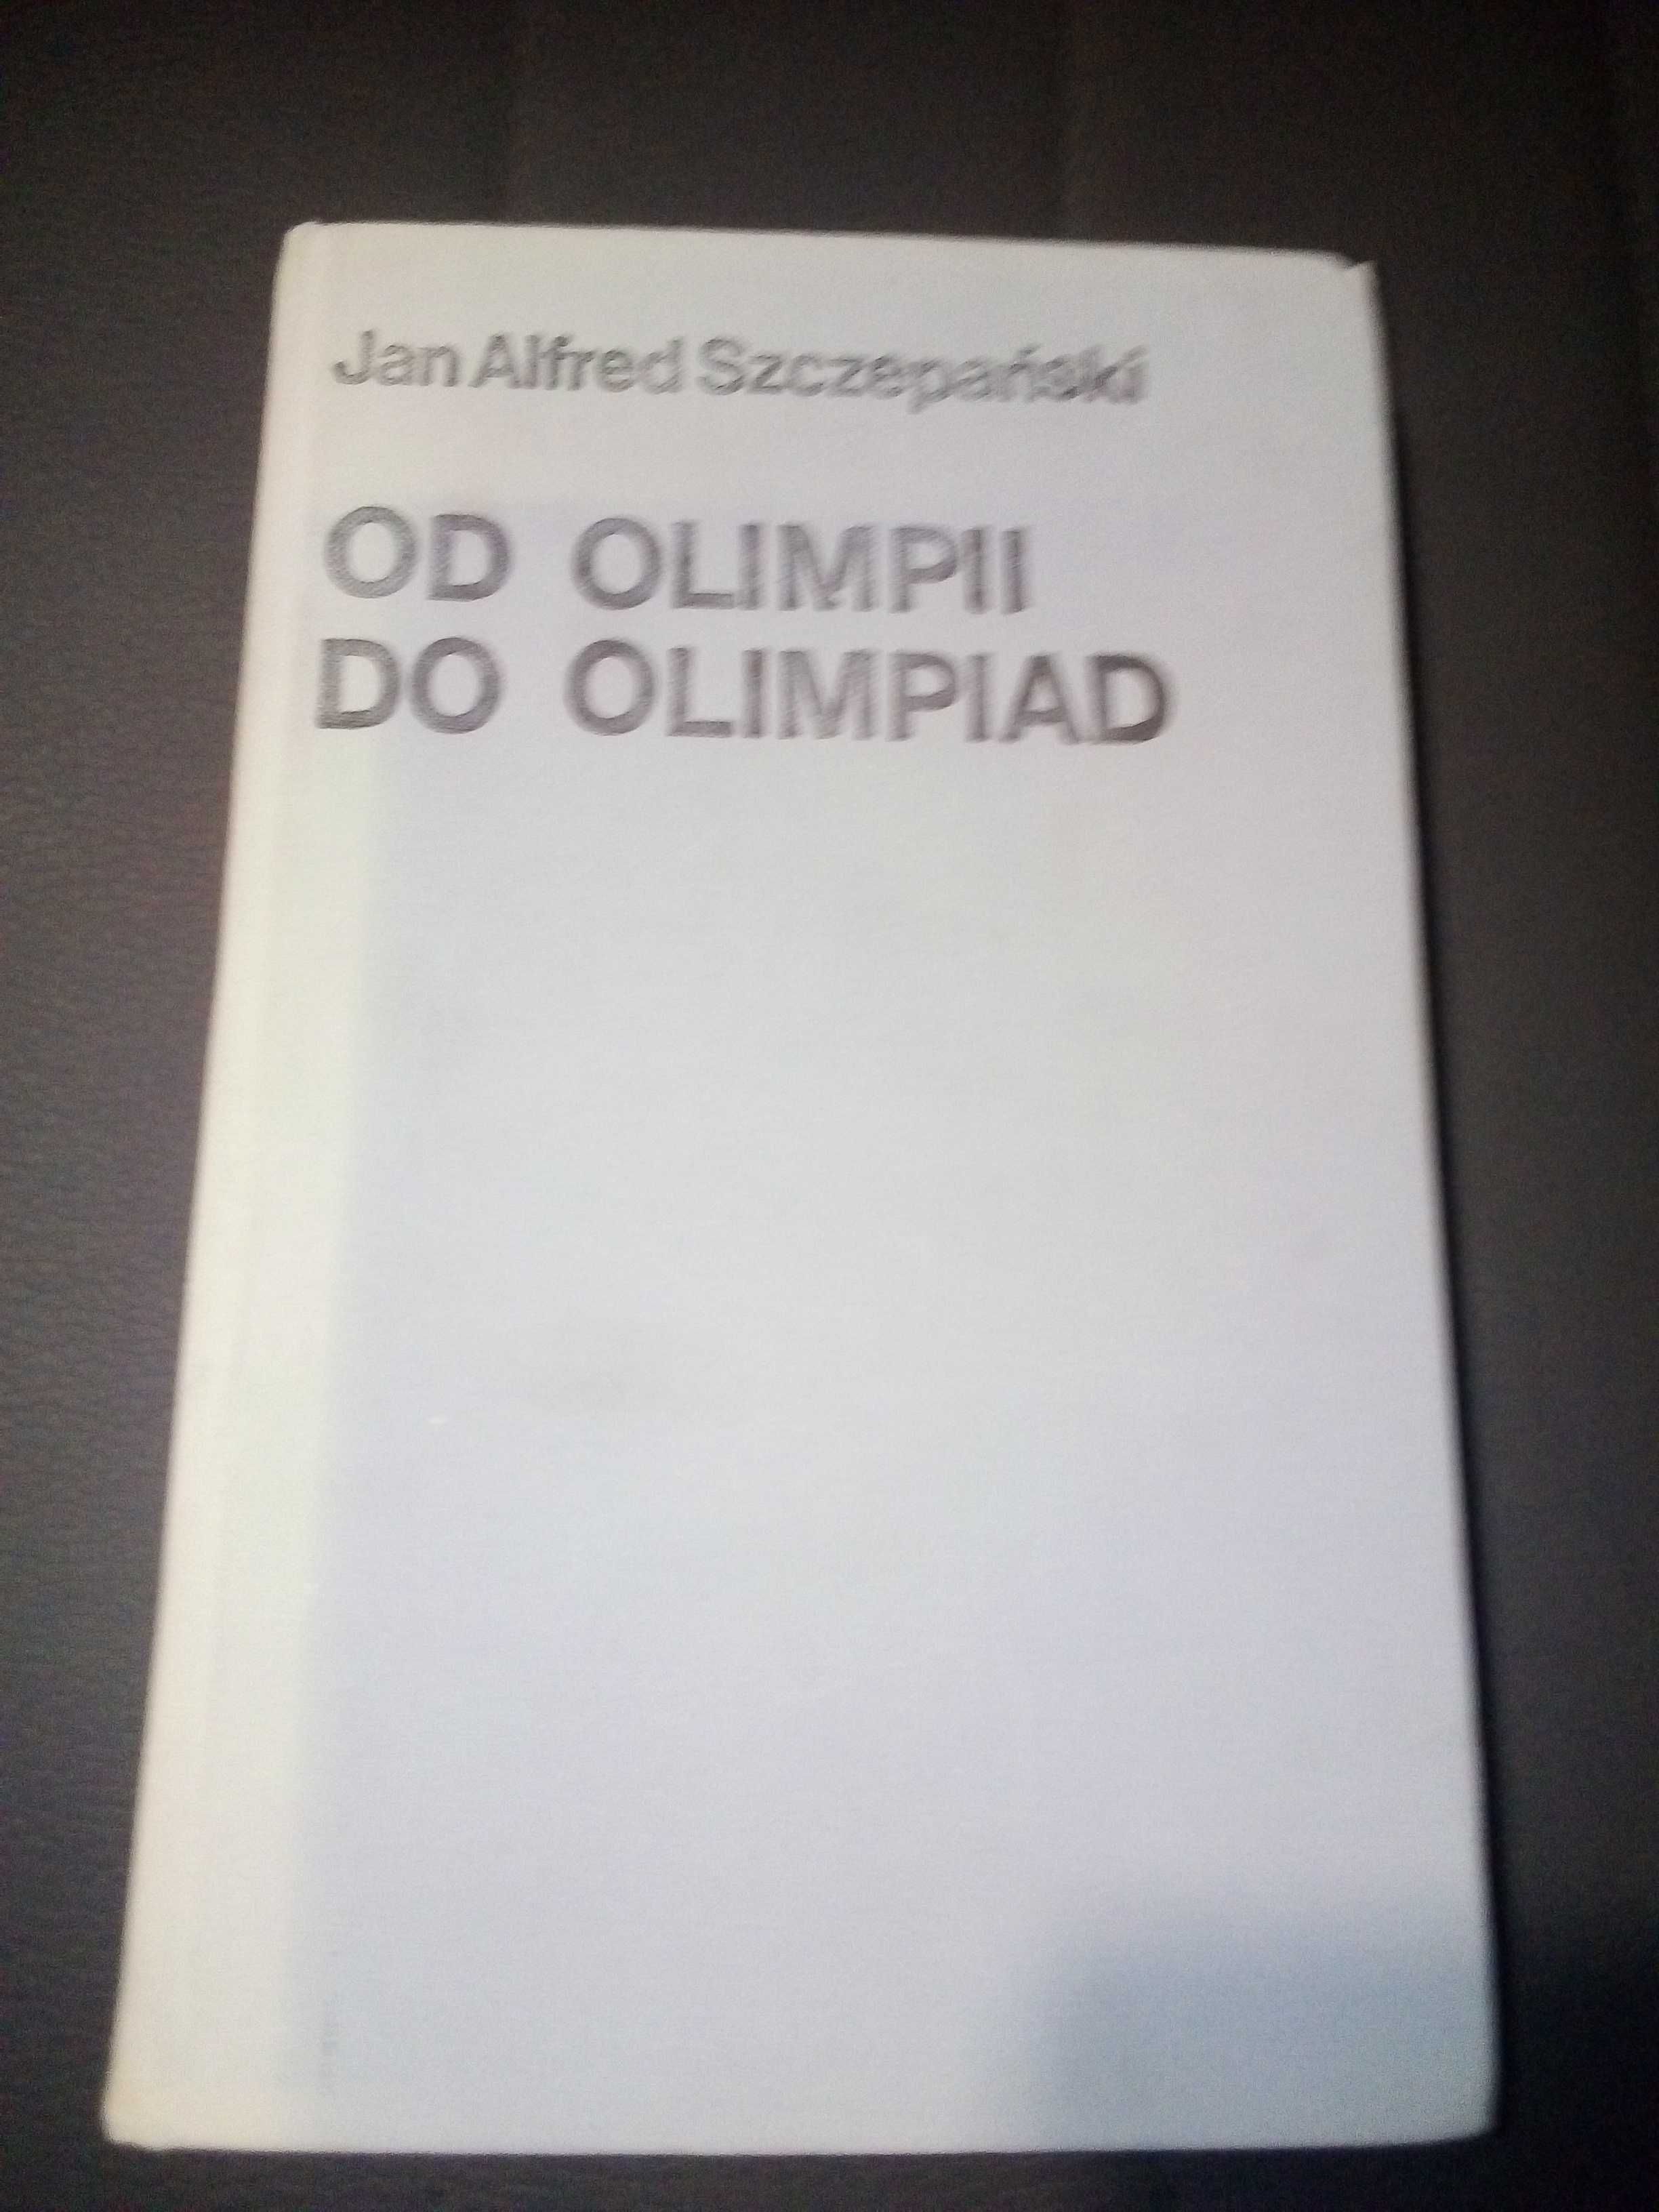 Książka "Od Olimpii do olimpiad" J.A. Szczepański  1980r